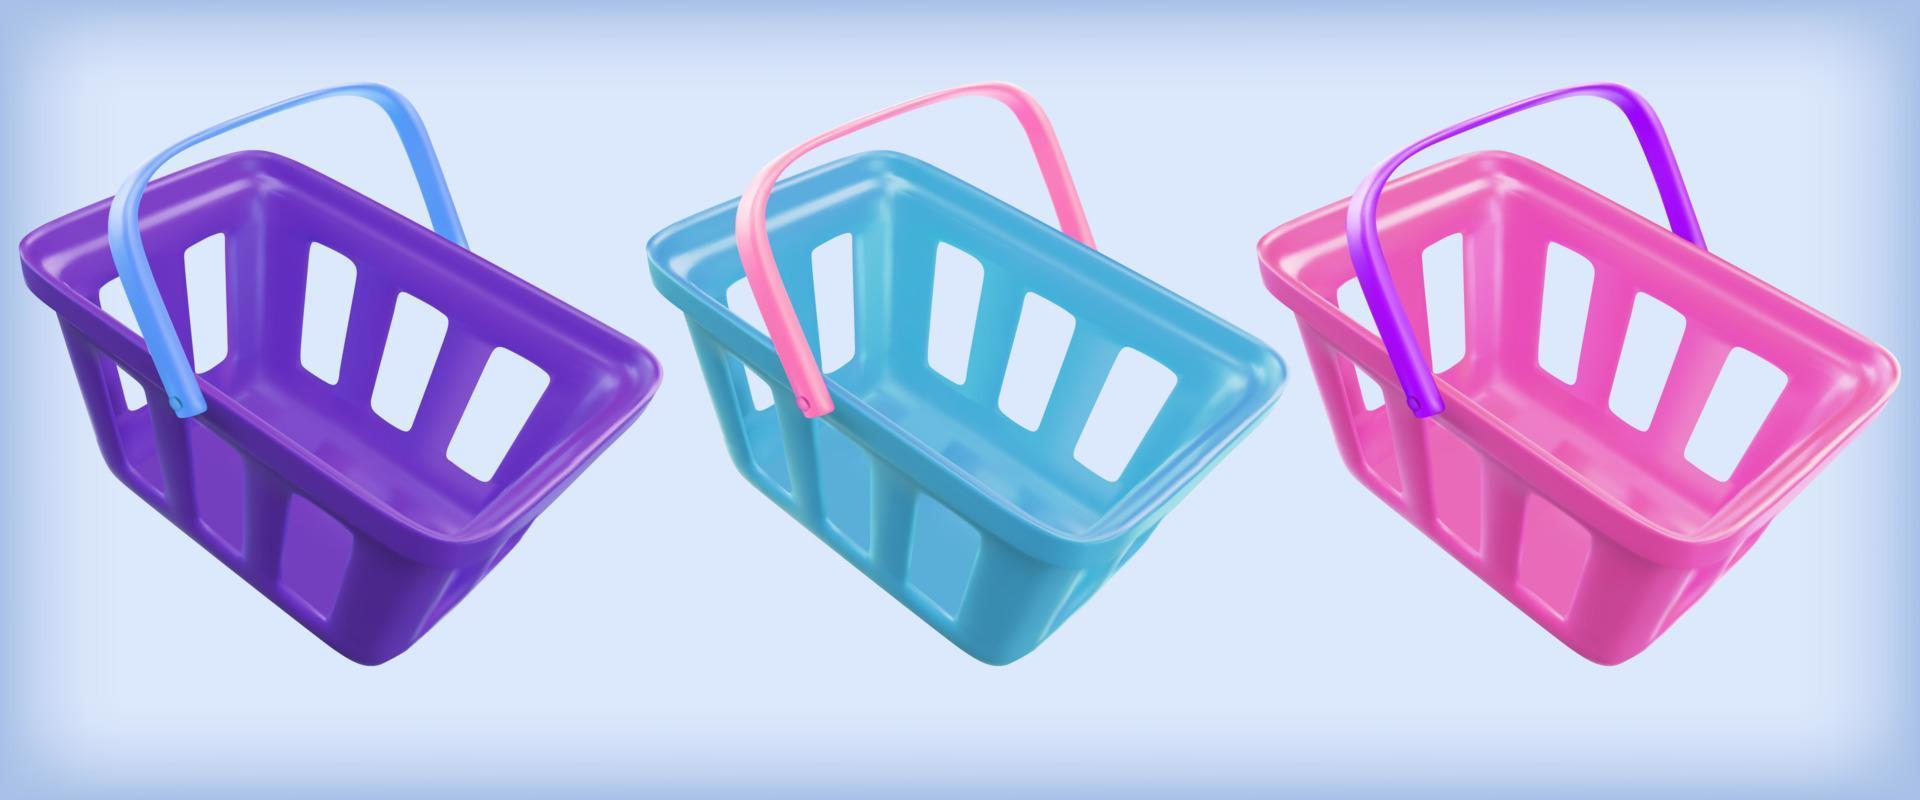 carrinho de compras. conjunto de cesta de comida realista. renderização de vetor 3D em estilo plástico.